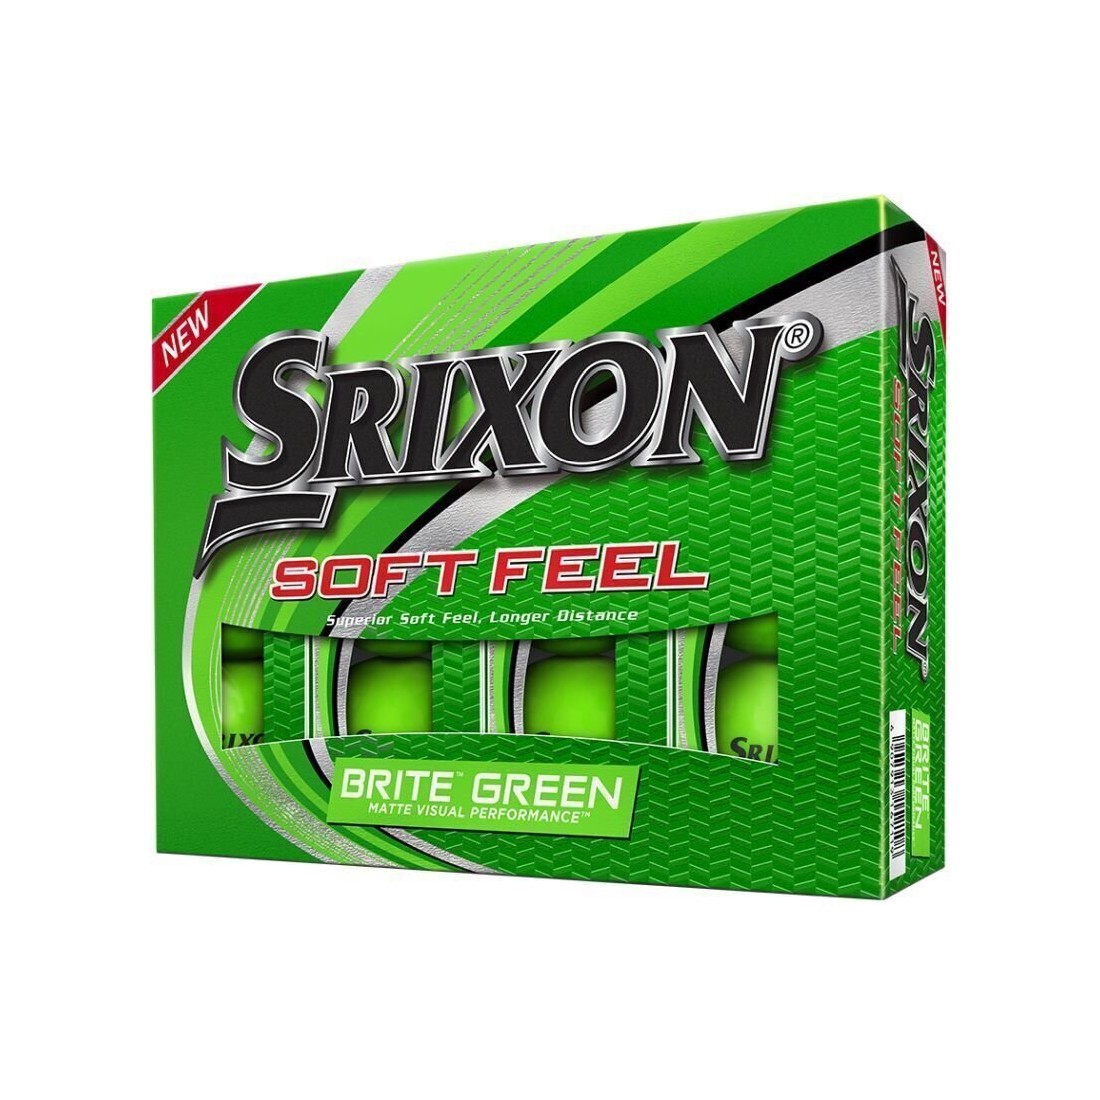 Achat/vente balles de golf SRIXON modèle Soft Feel verte